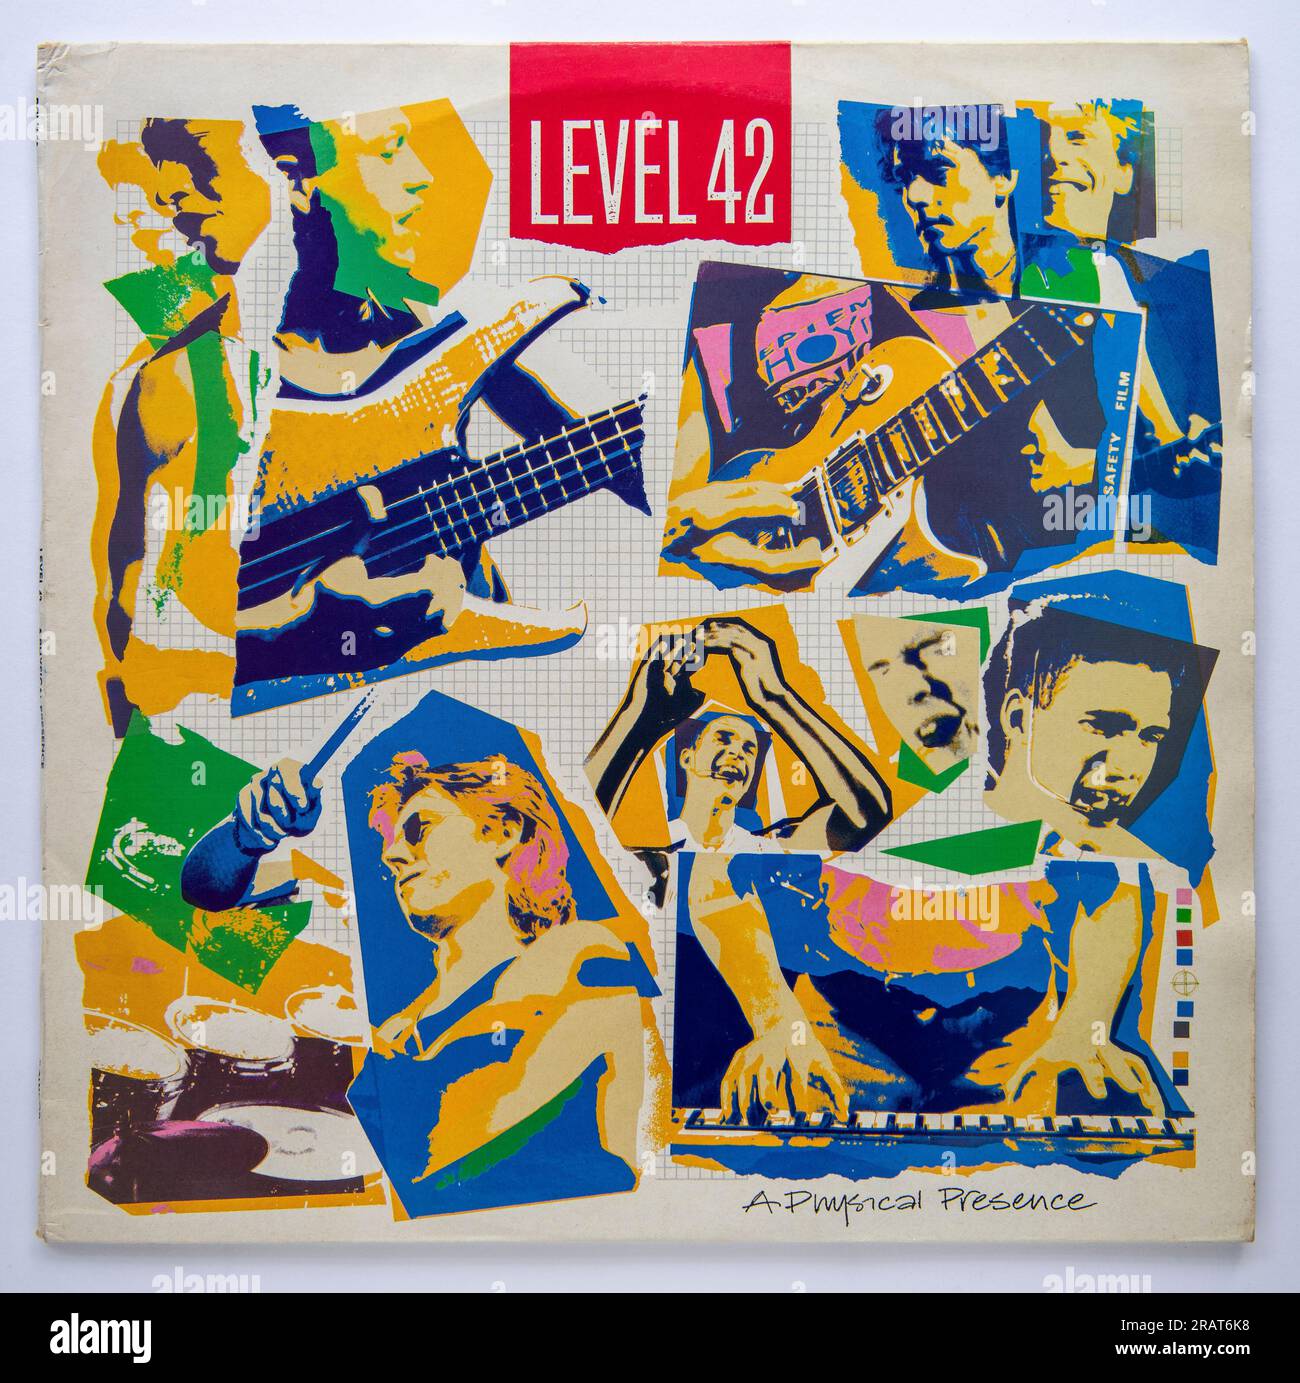 Copertina LP del doppio album live di Level 42 A Physical Presence, pubblicato nel 1985 Foto Stock